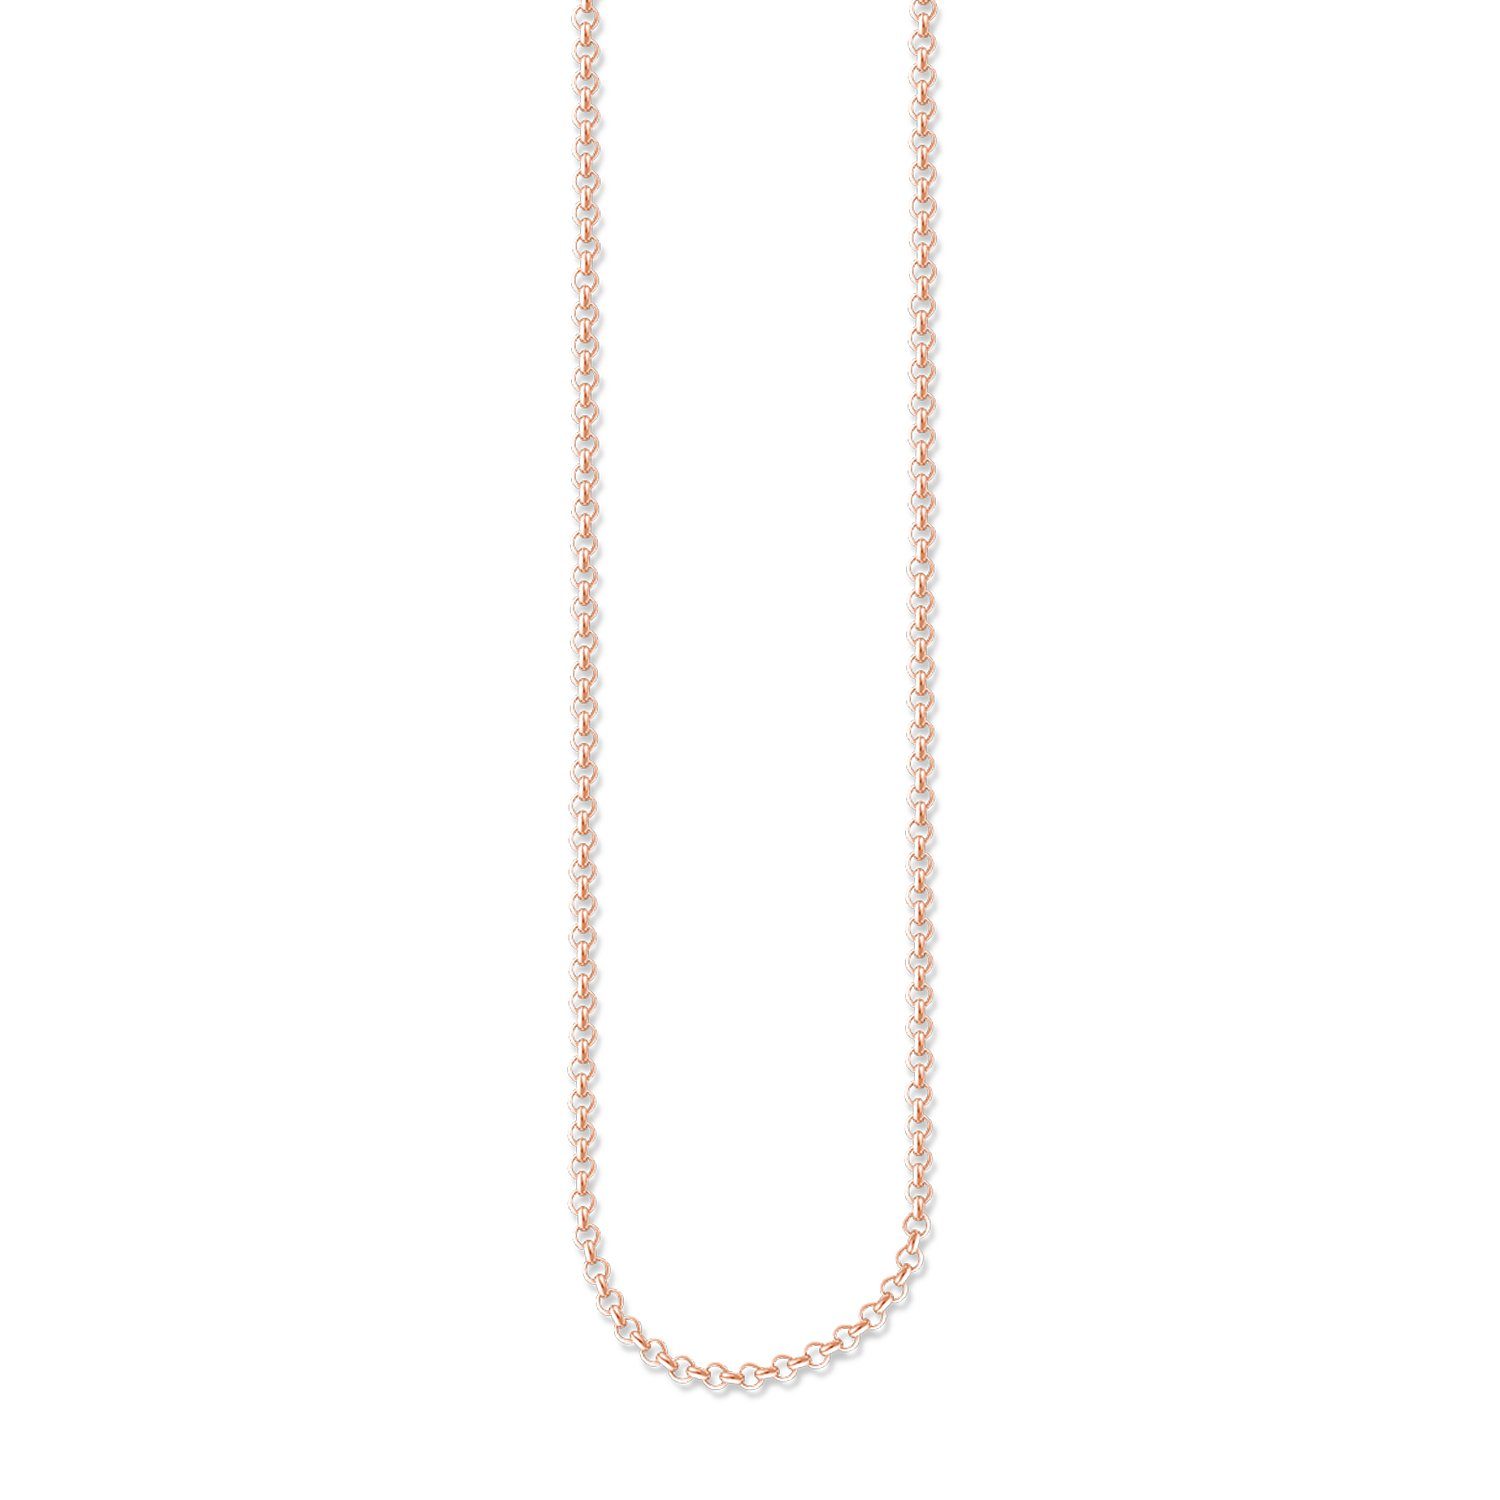 THOMAS SABO Kette ohne Anhänger KE1219-415-12 Halskette Damen Silber Roségold Vergoldet 42 cm